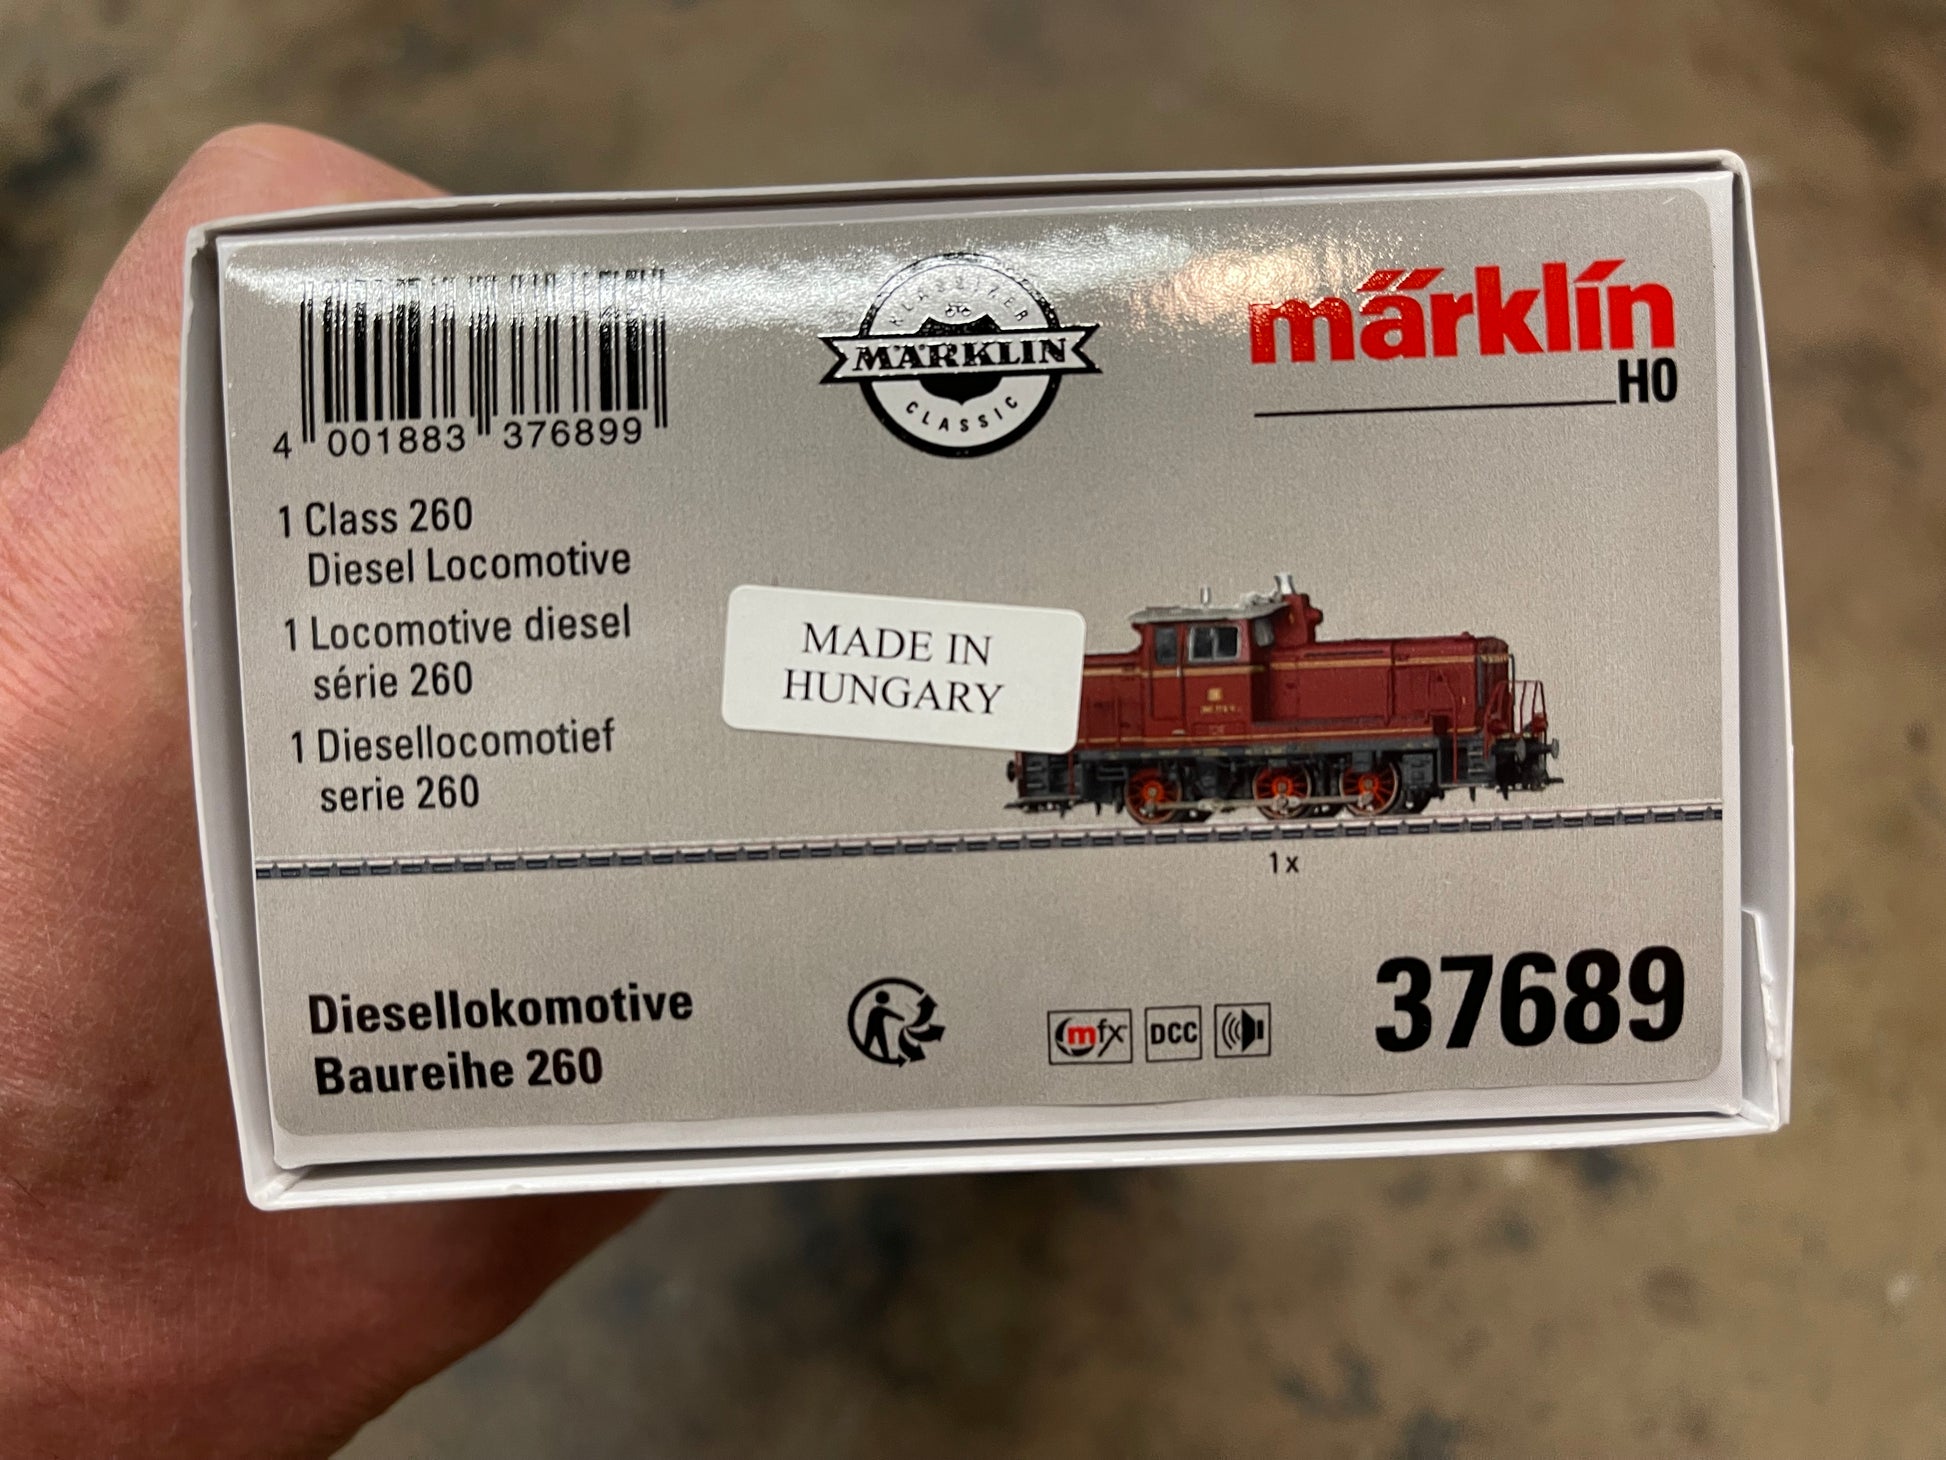 Marklin 37689 - Class 260 Diesel Locomotive at Ajckids.com